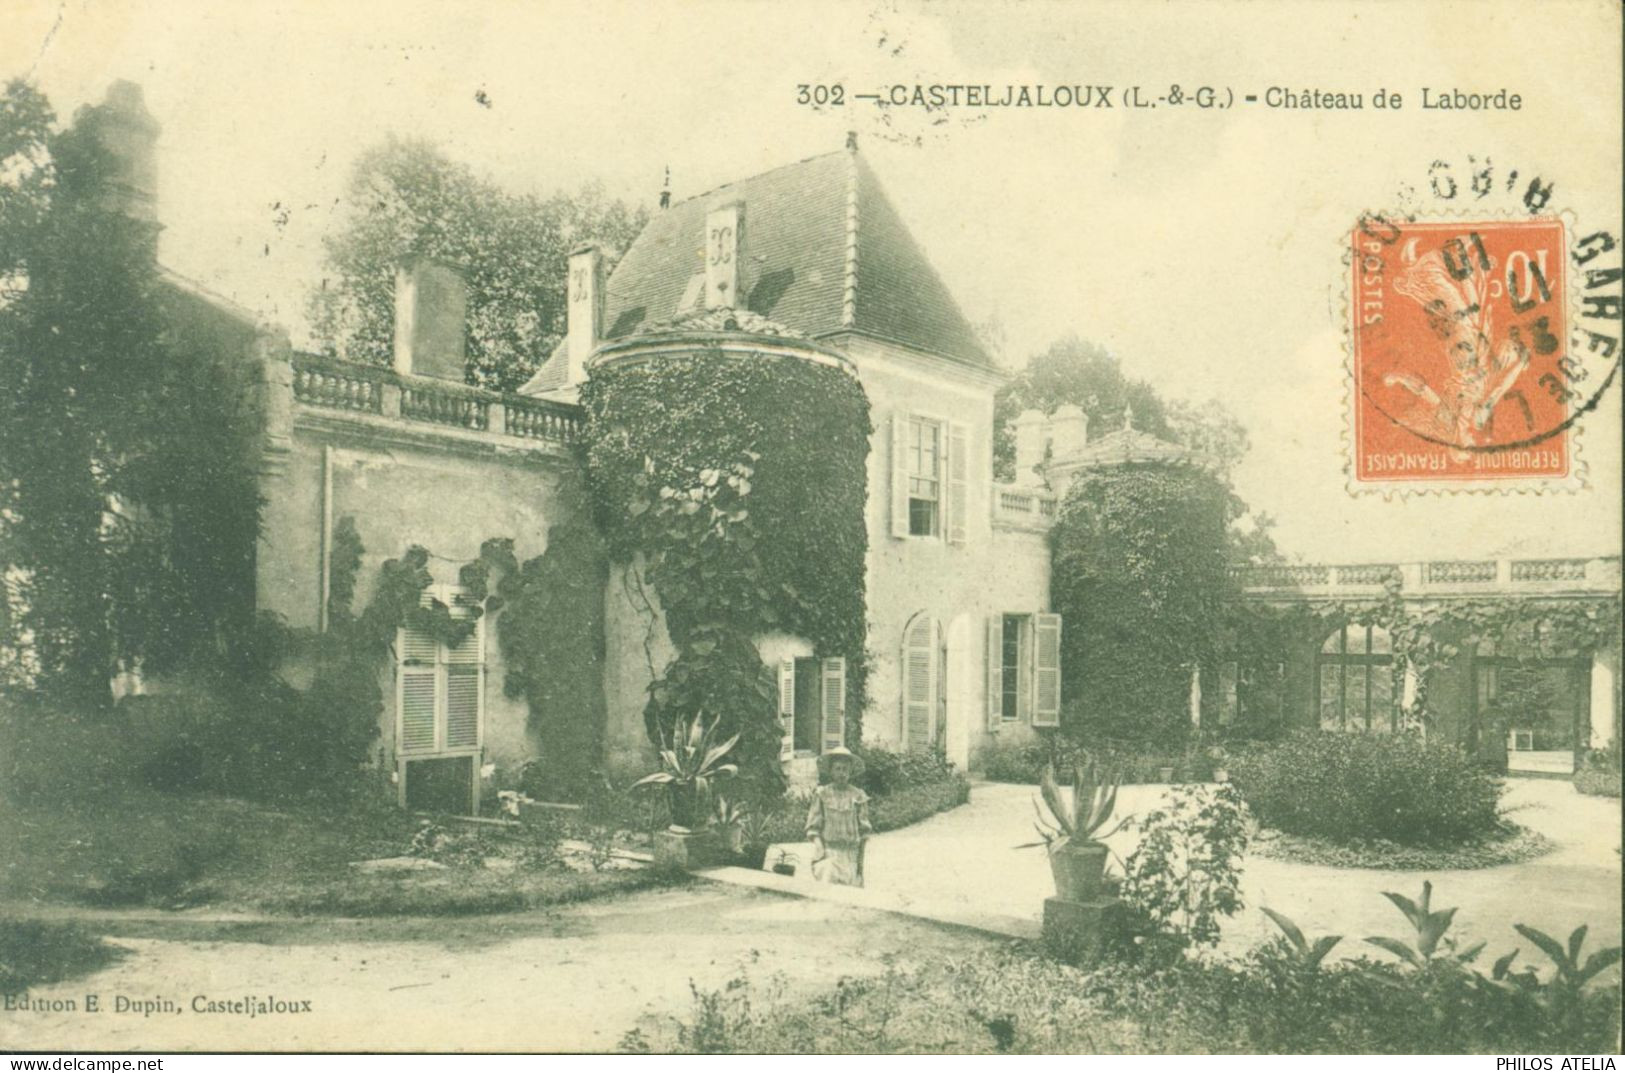 CPA CP Carte Postale Ancienne Lot Et Garonne Casteljaloux Château De Laborde Edition E Dupin Casteljaloux - Casteljaloux